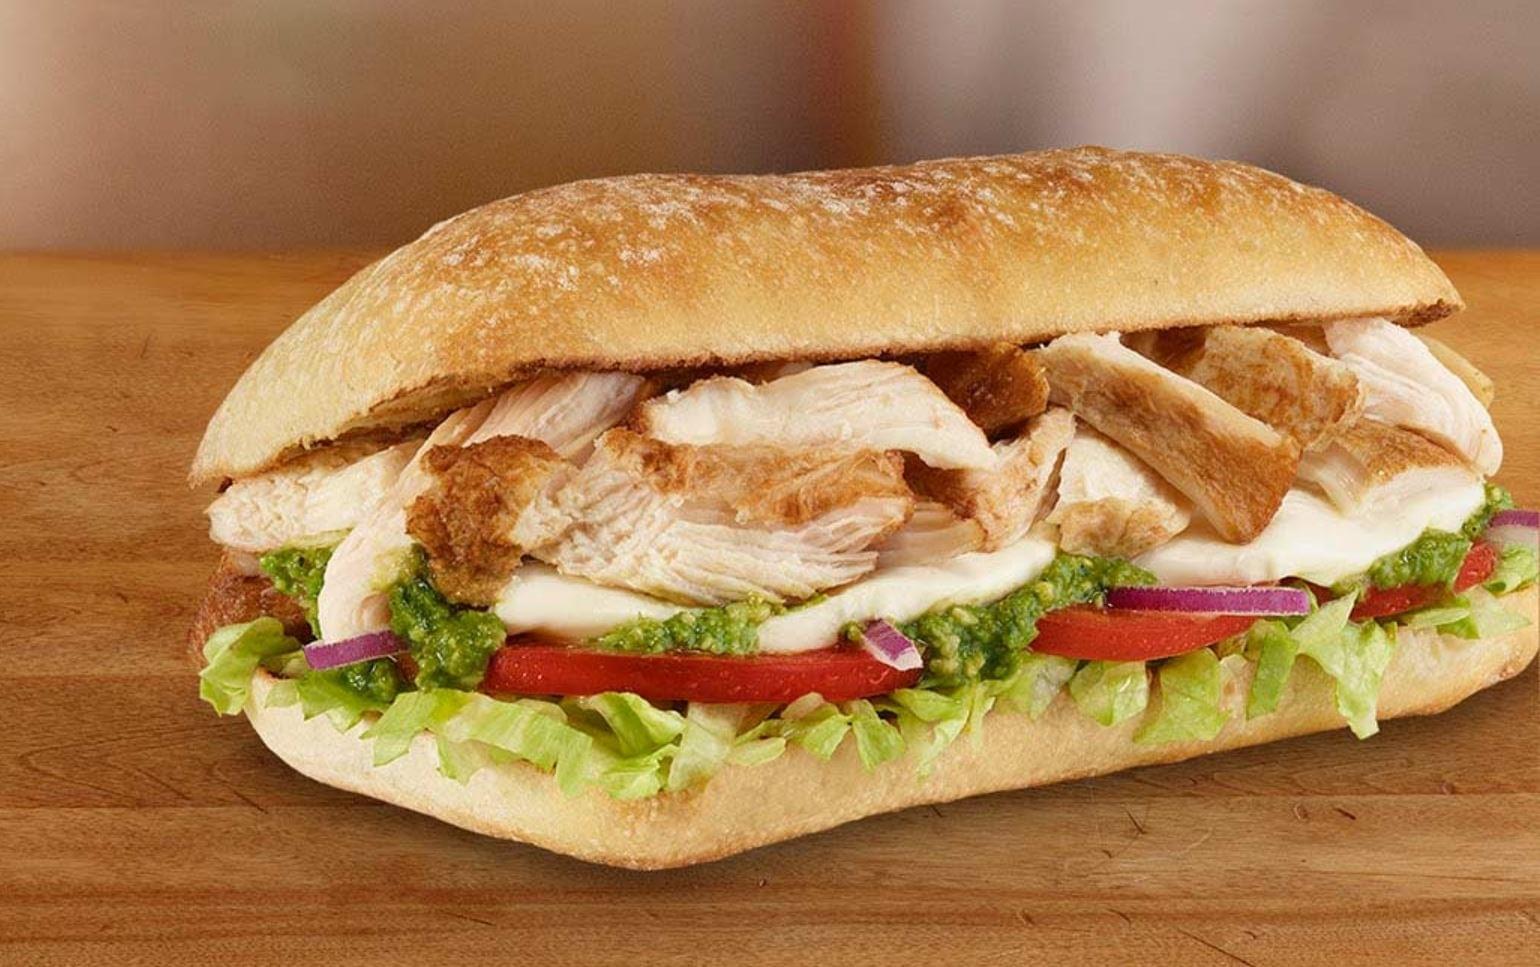 Subway 6" Chicken Pesto Ciabatta Sandwich with Fresh Mozzarella Nutrition Facts